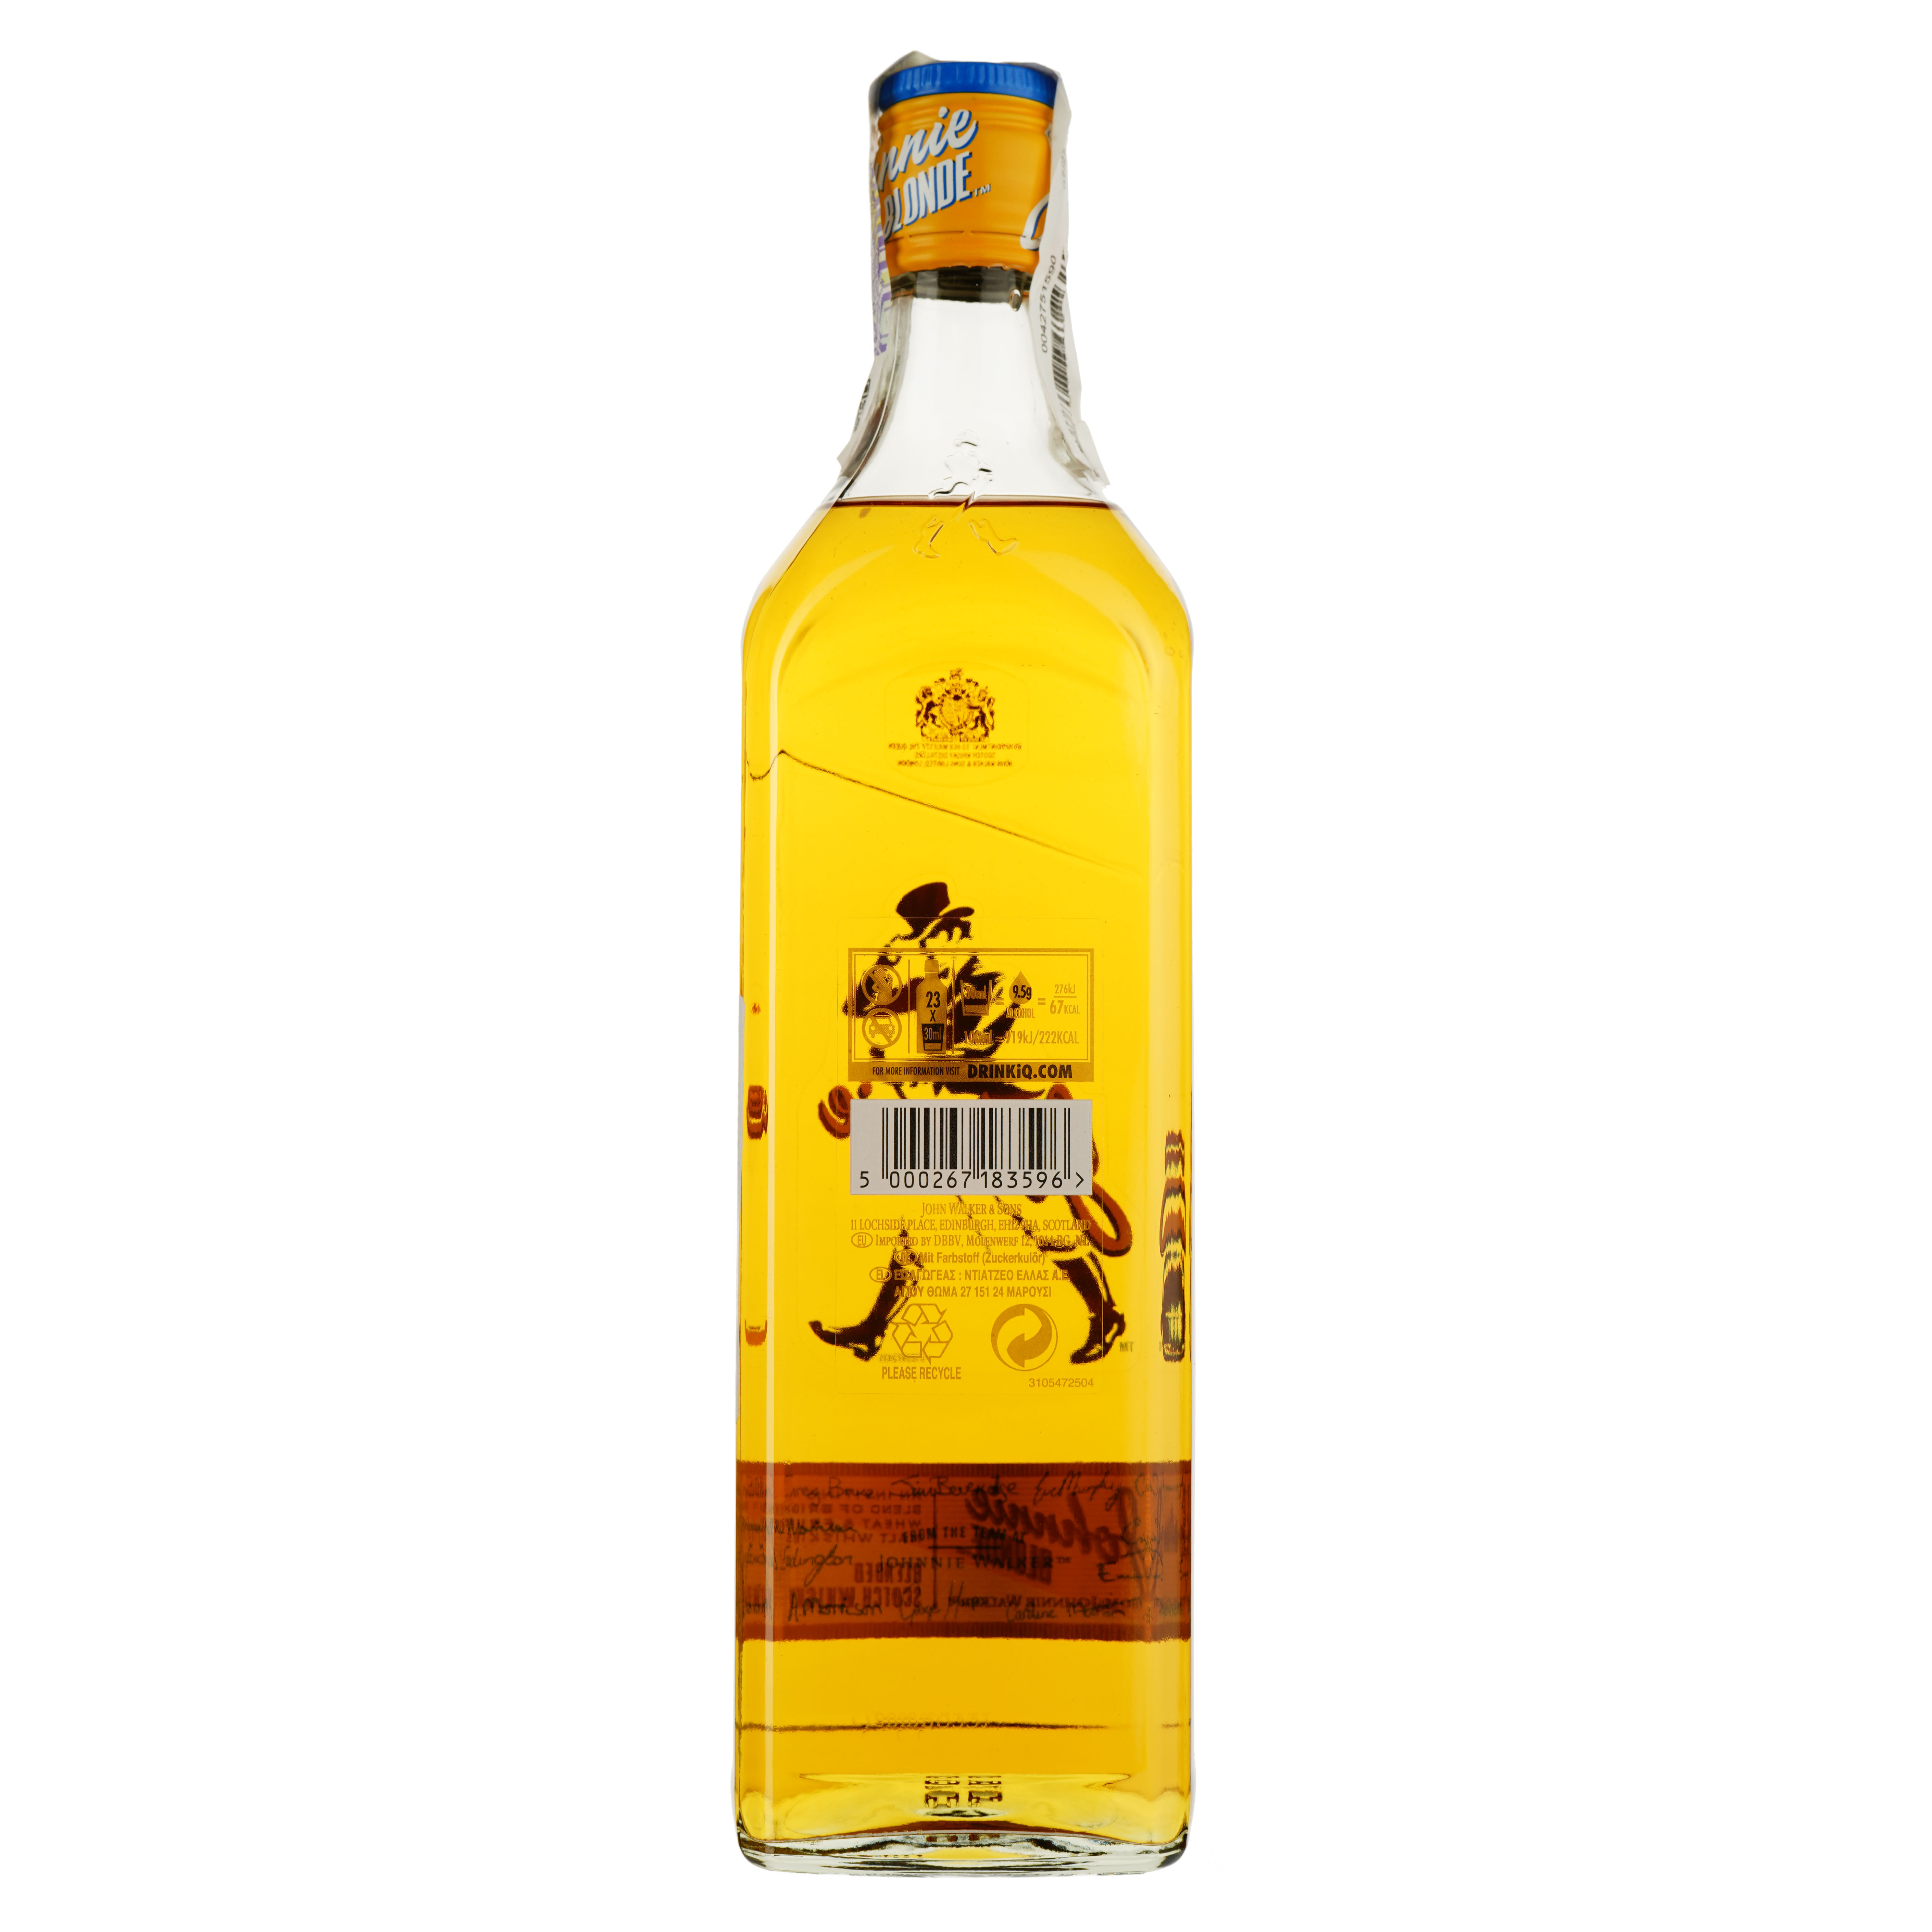 Віскі Johnnie Walker Blonde Blended Scotch Whisky, 40%, 0,7 л - фото 2